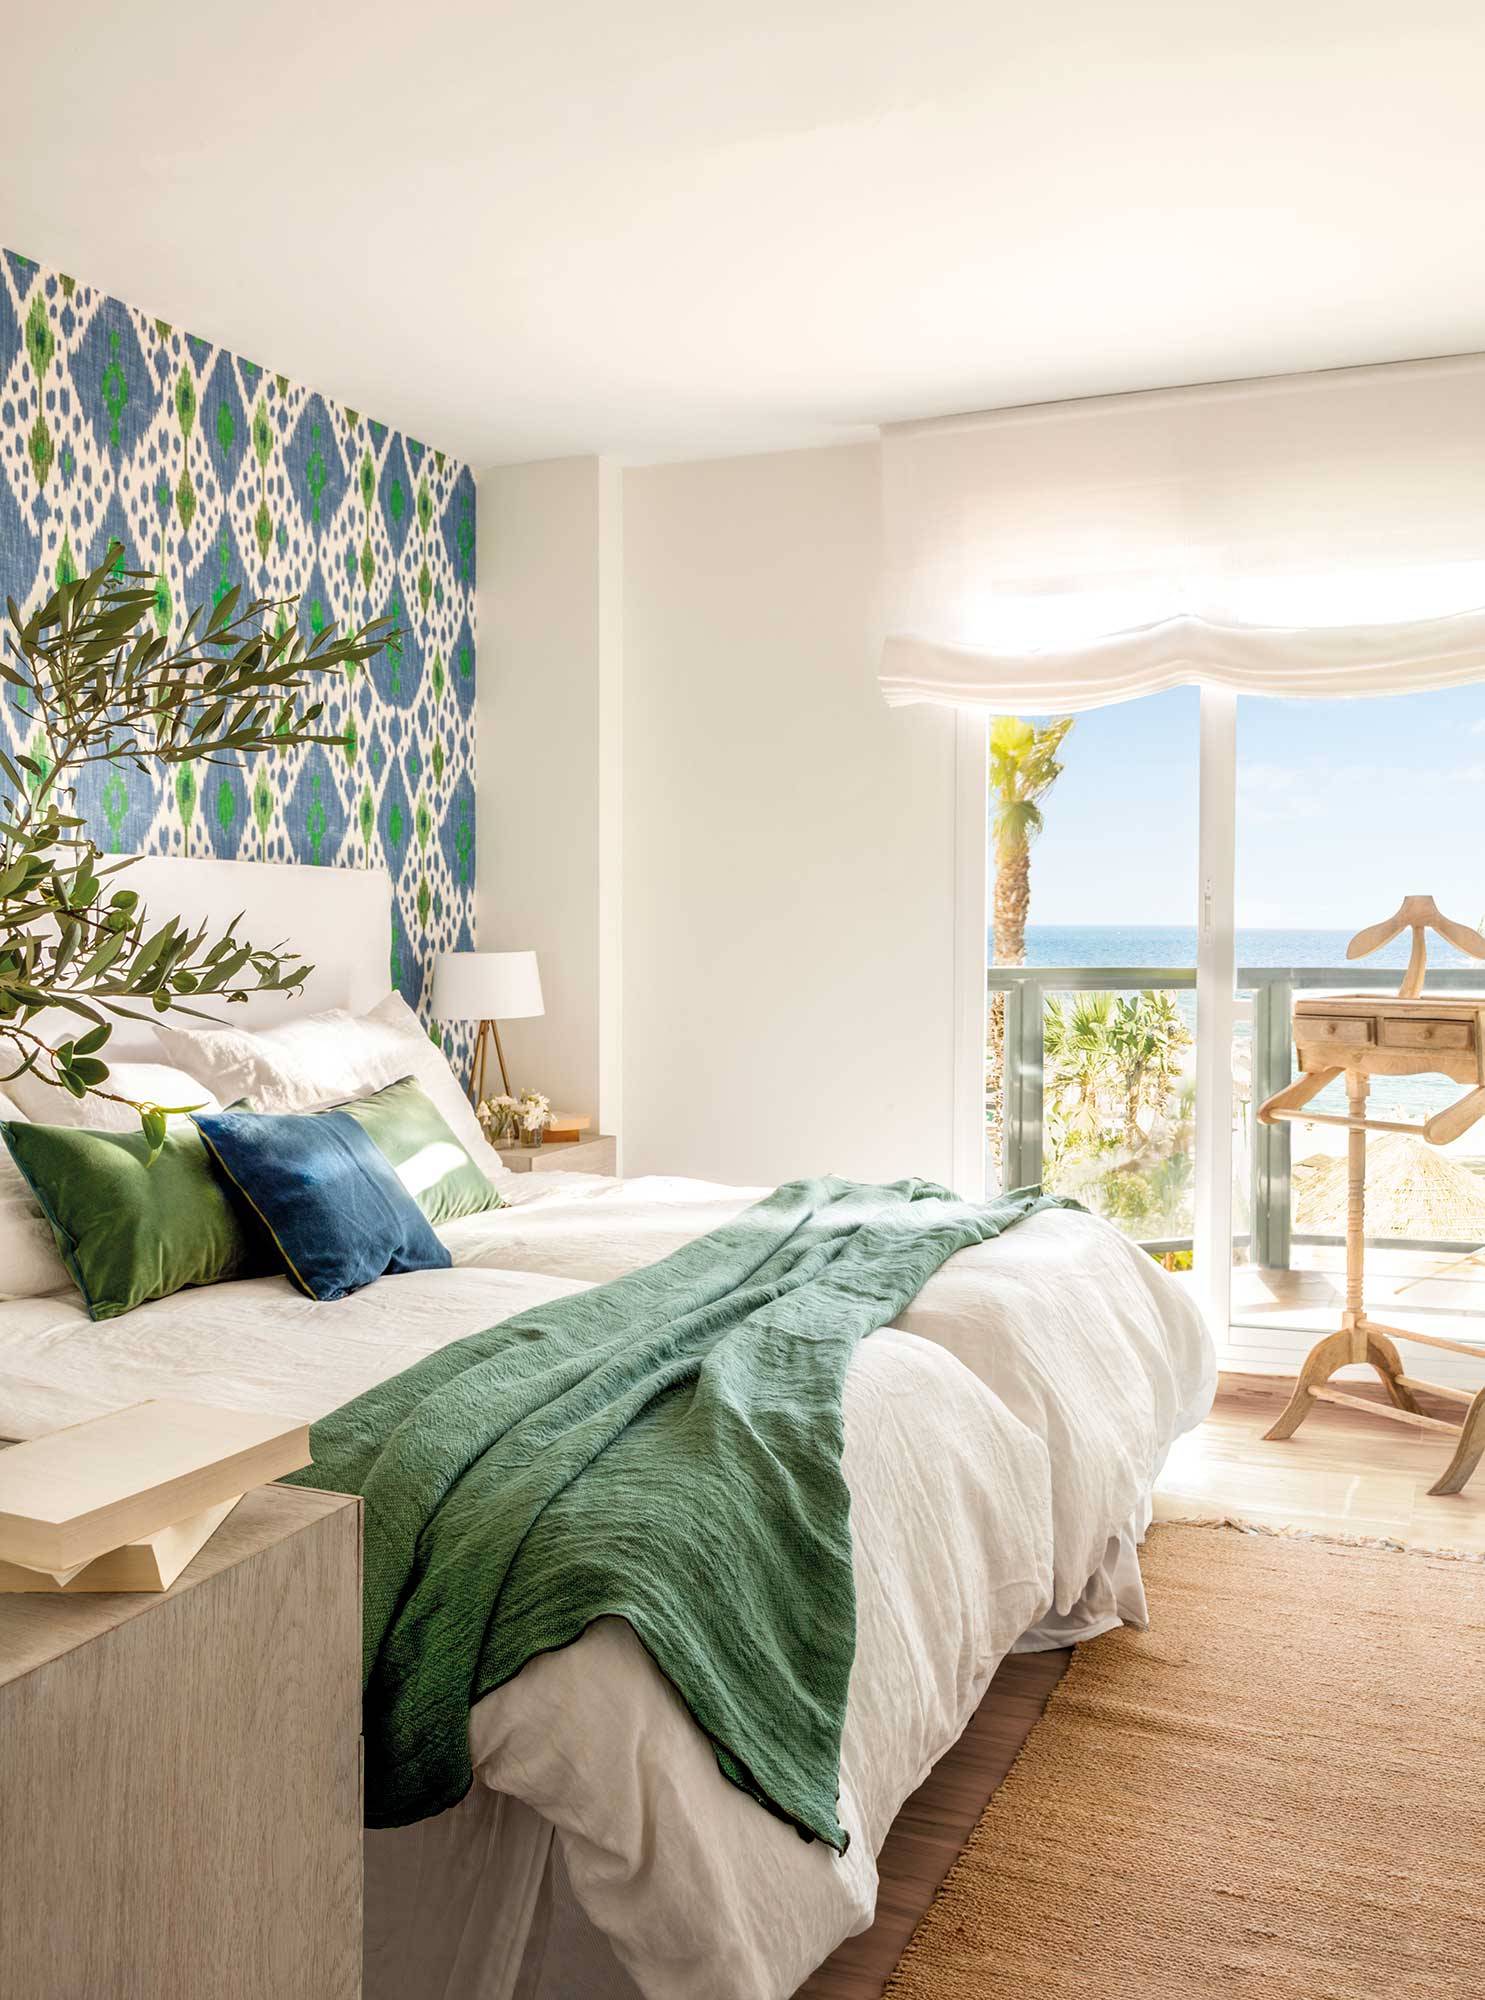 Dormitorio de verano con papel pintado azul y verde en el cabecero y ropa de cama blanca. 